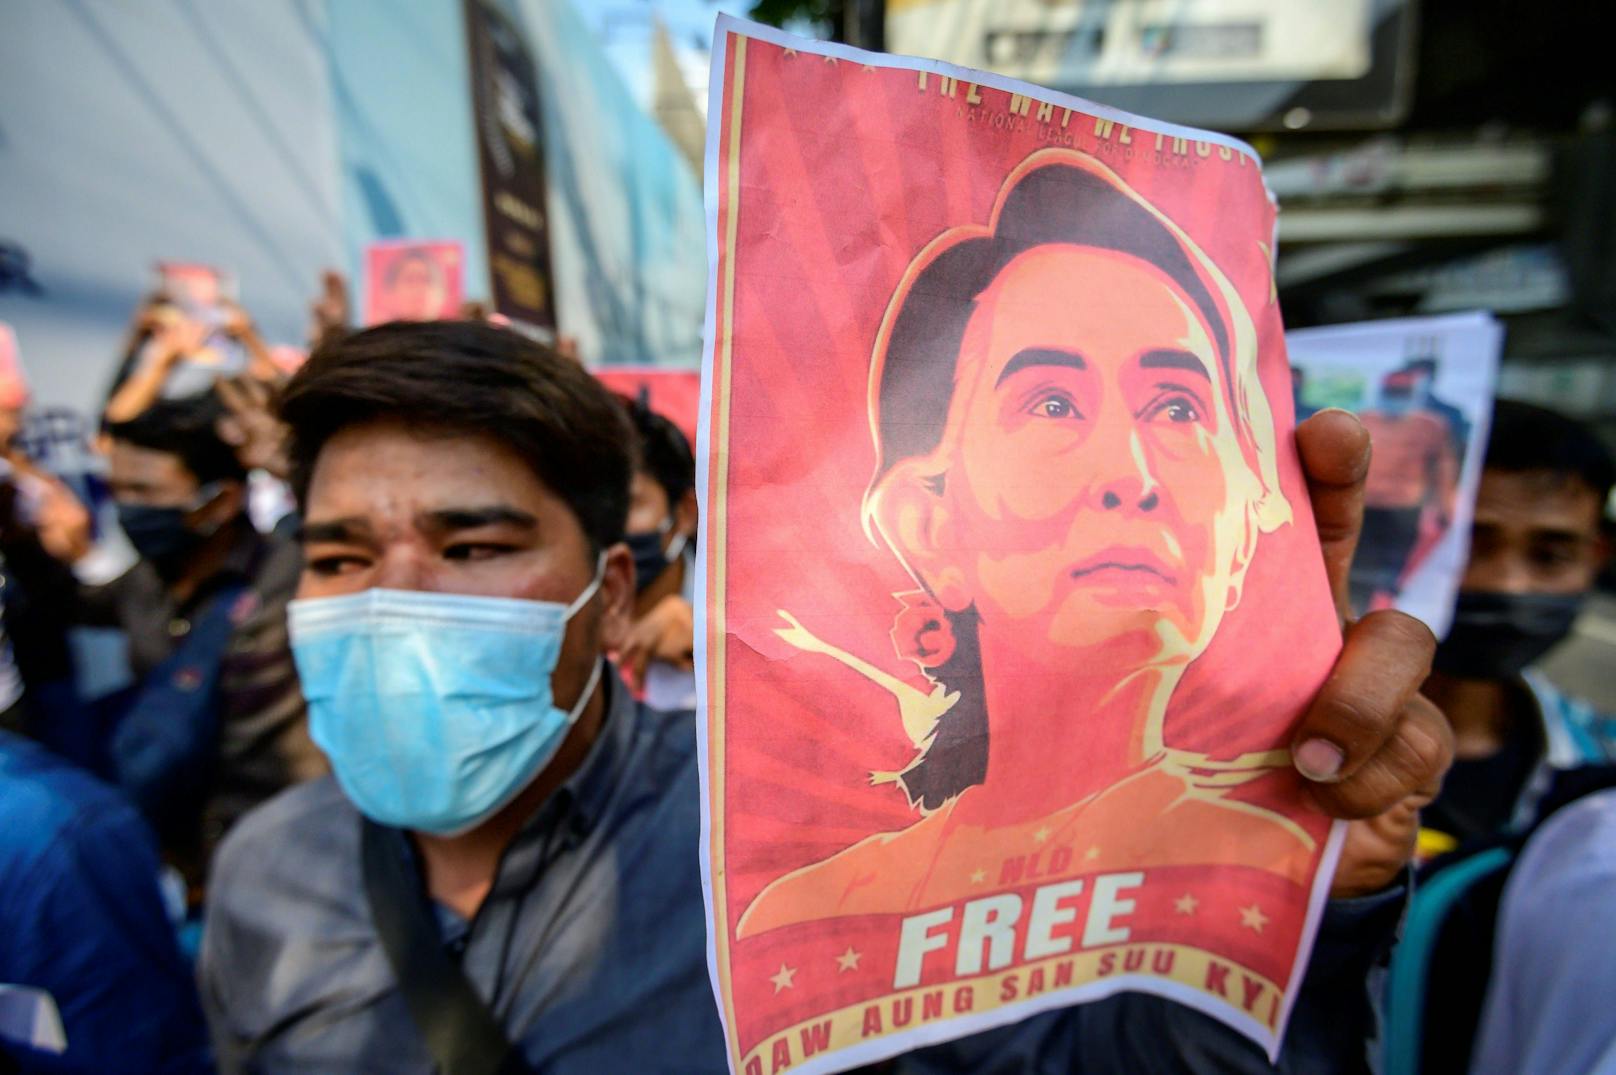 Die seit 2016 als faktische Regierungschefin amtierende Aung San Suu Kyi wurde knapp drei Monate nach ihrem klaren Wahlsieg zusammen mit zahlreichen anderen Politikern festgesetzt und soll sich im Hausarrest befinden.